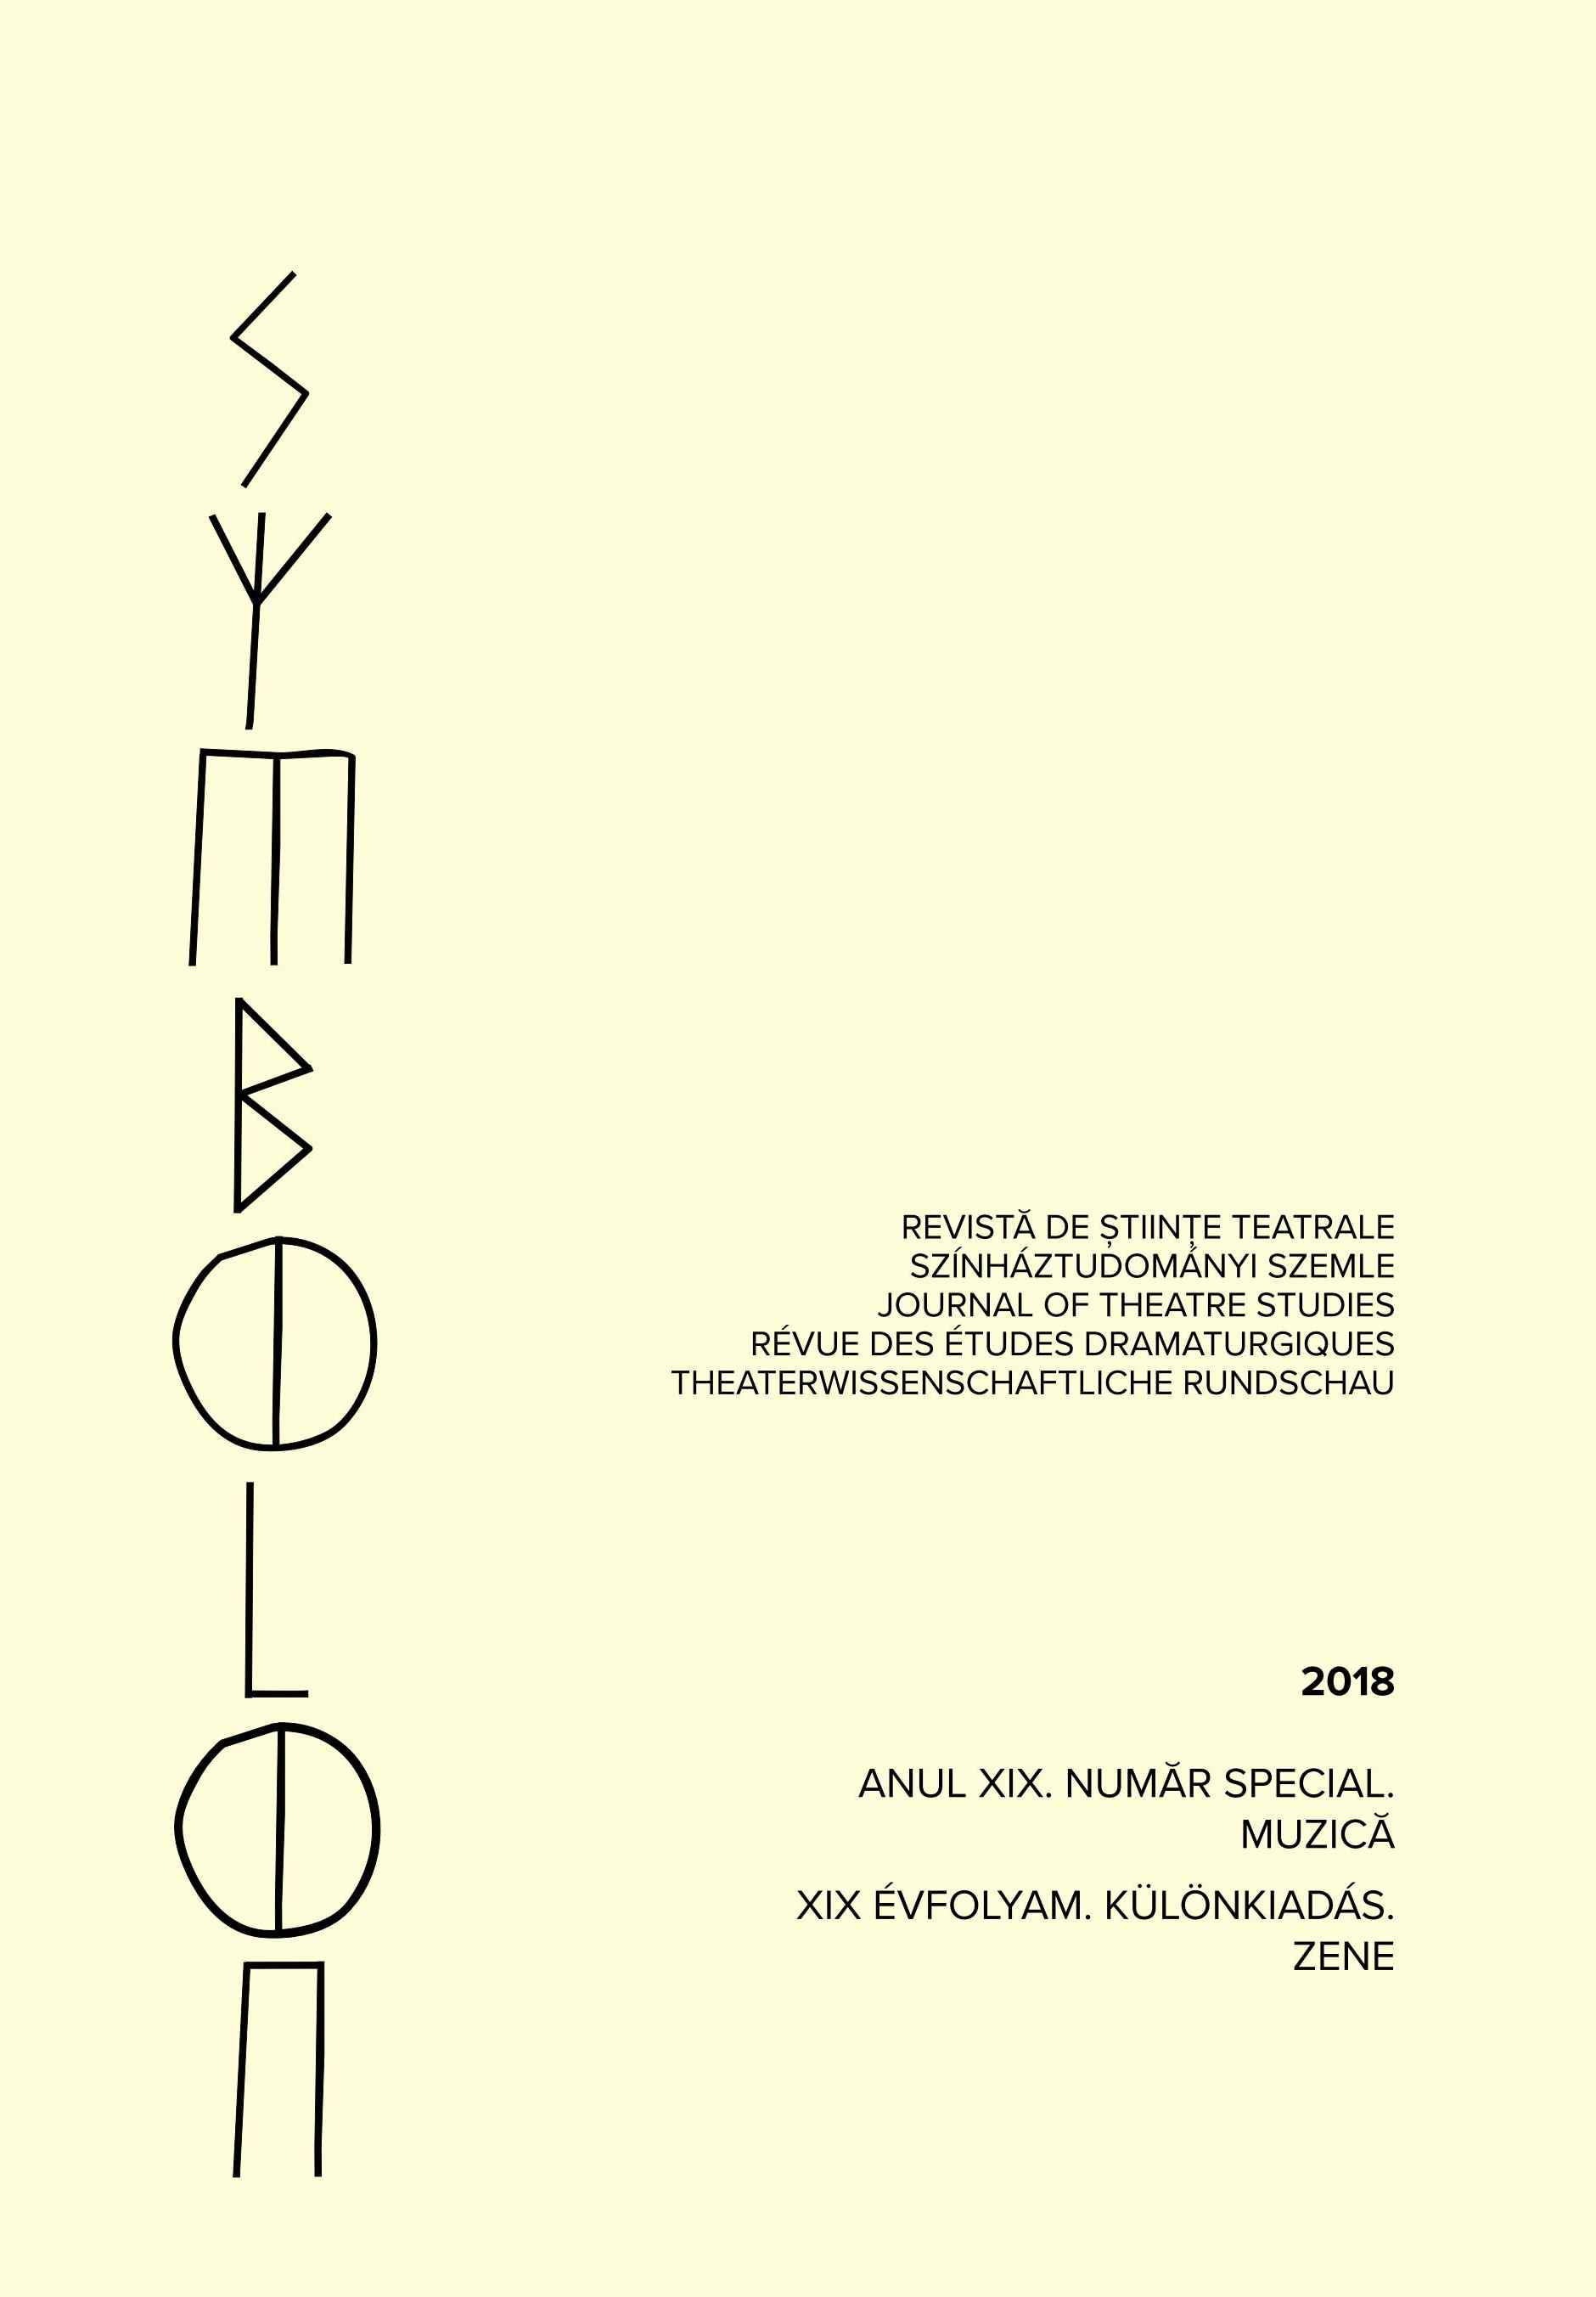 Archaic Sounds in "In Vestigiis Ovidii" by Daniela Cojocaru Cover Image